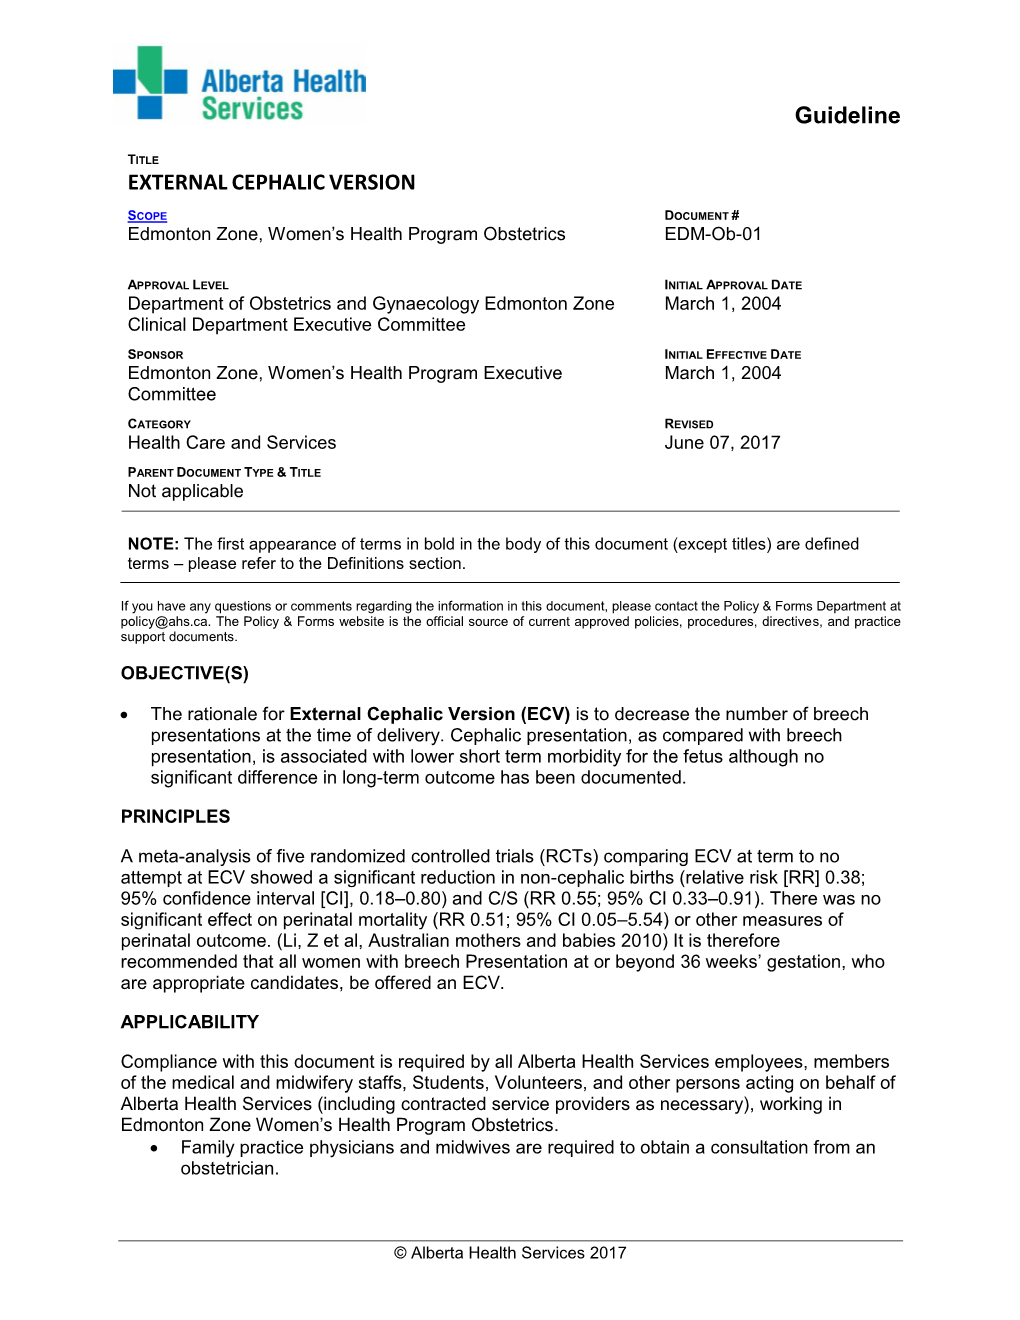 External Cephalic Version Guideline EDM-Ob-01